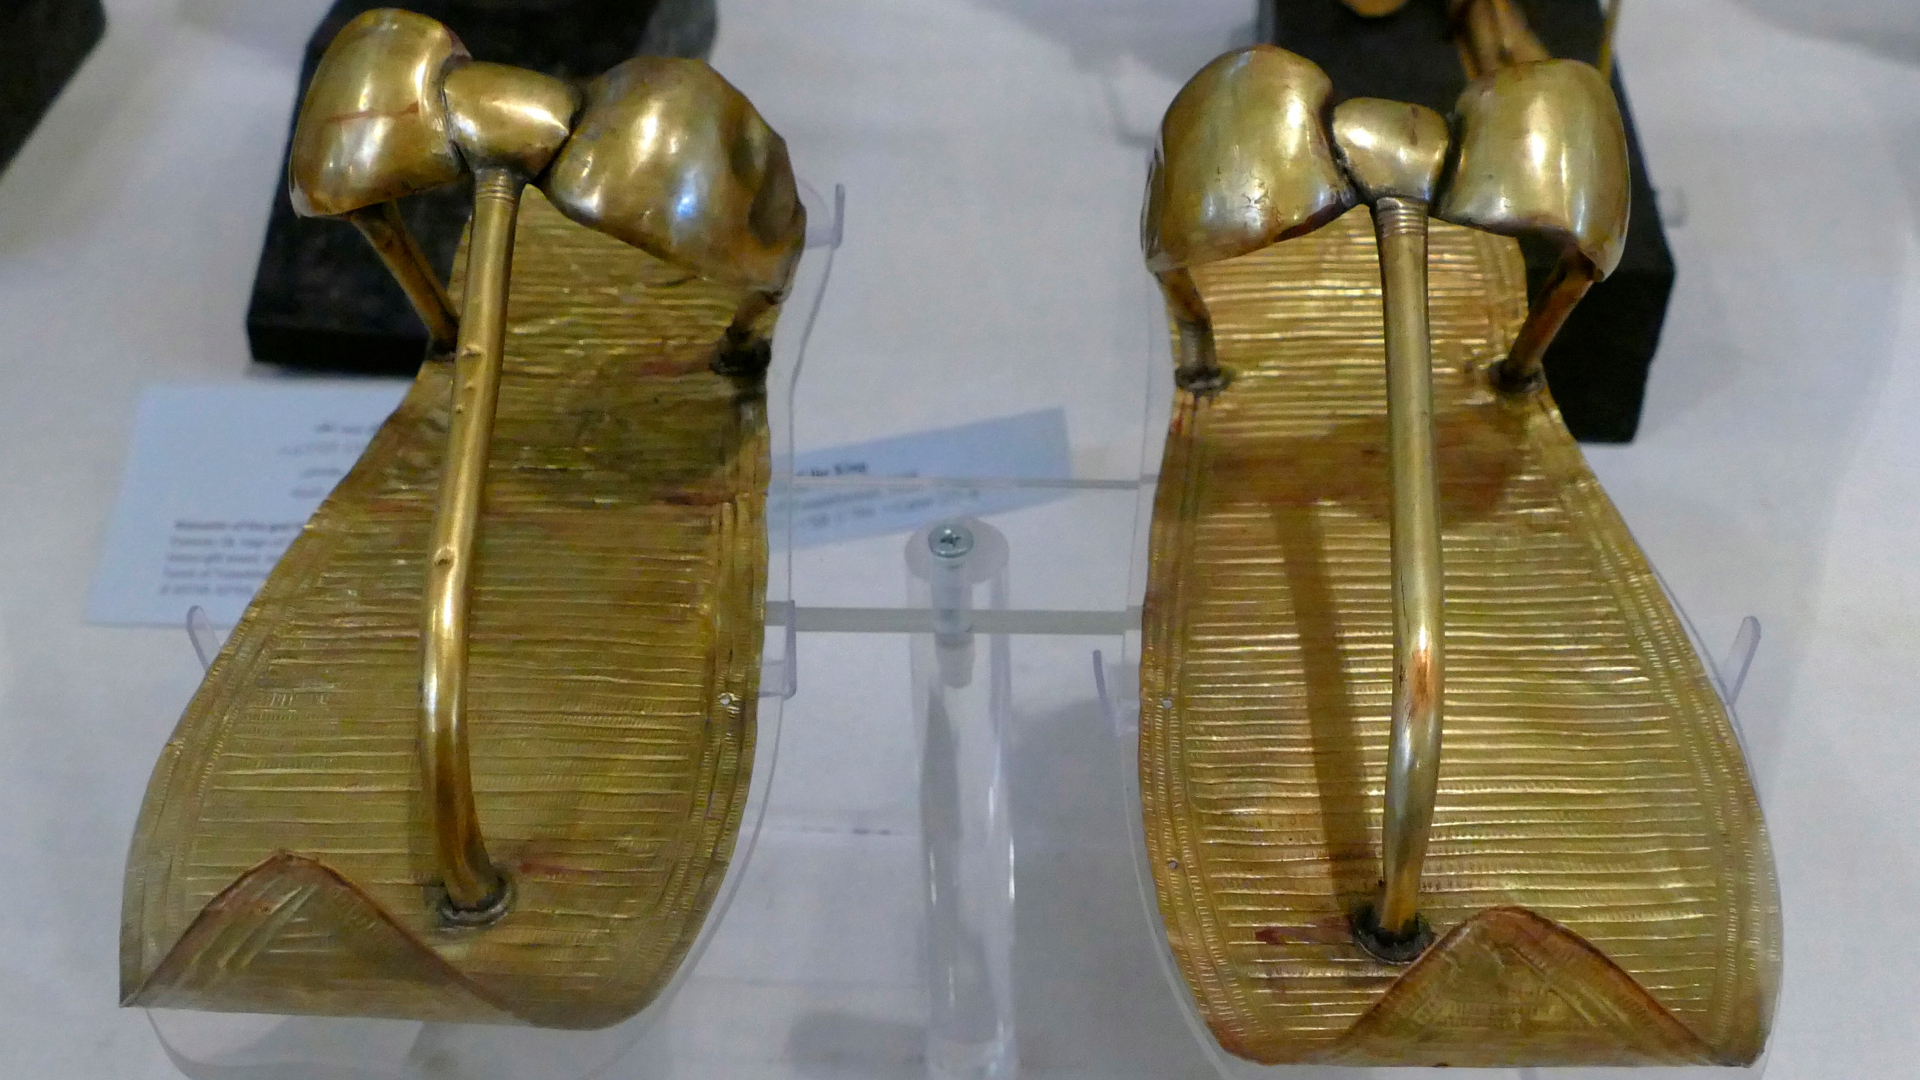 من المحتمل أن الملك توت لم يرتد هذه الصنادل الذهبية عندما كان على قيد الحياة.